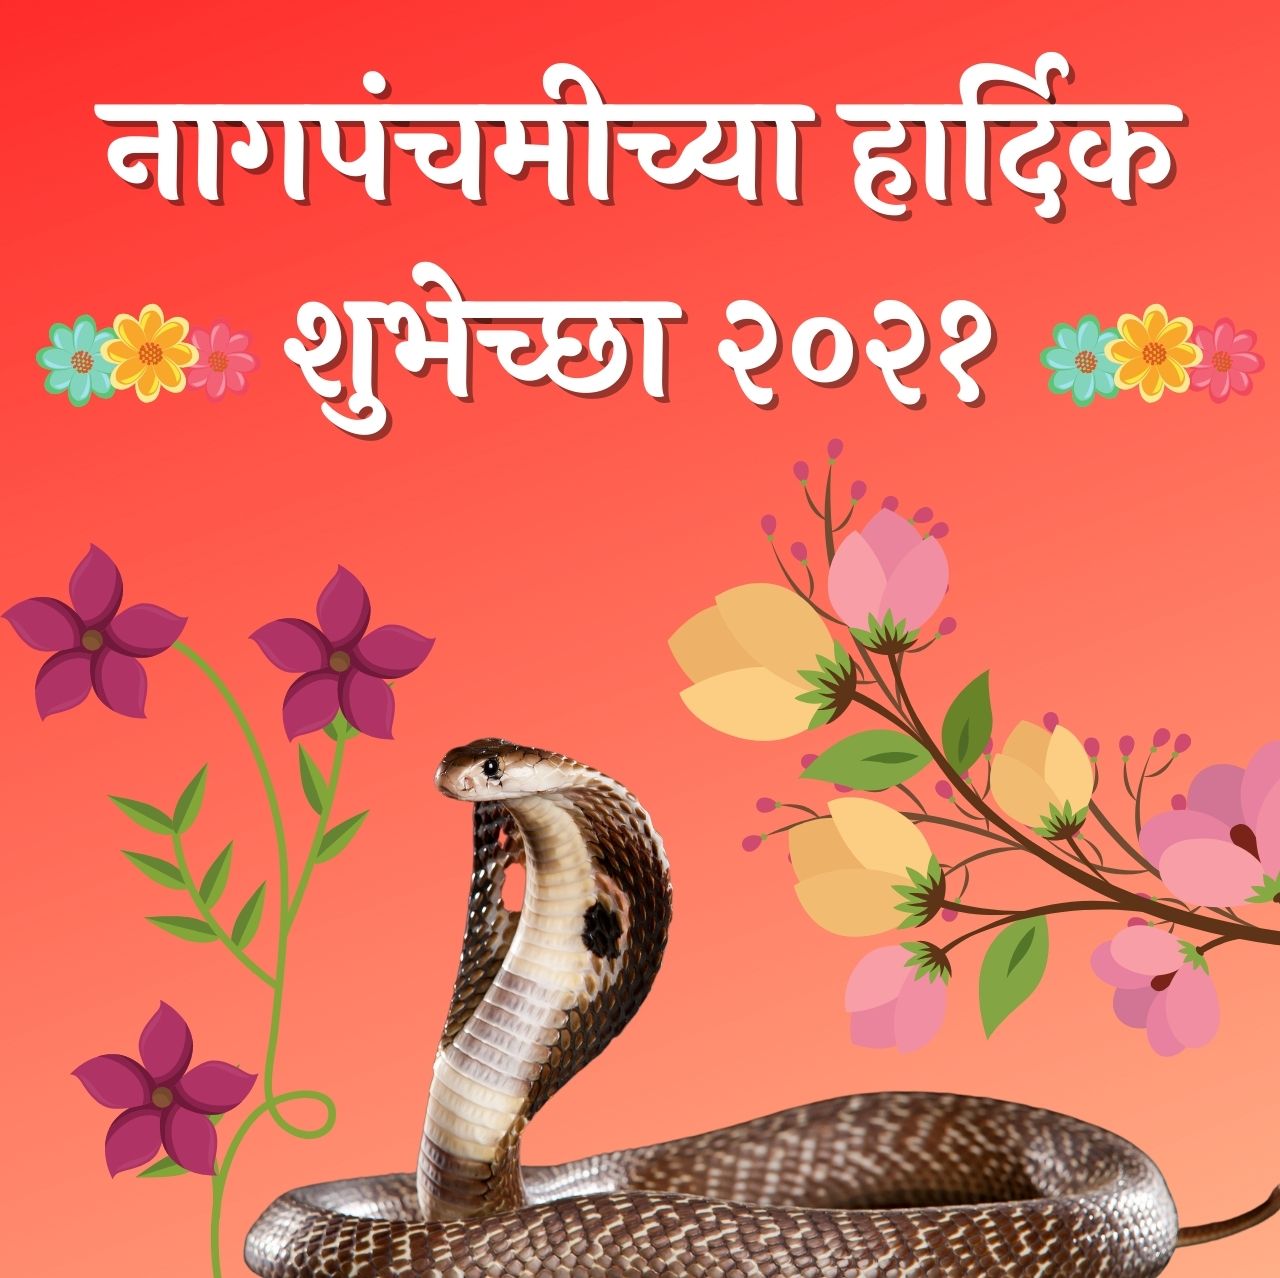 nagpanchami wishes in marathi